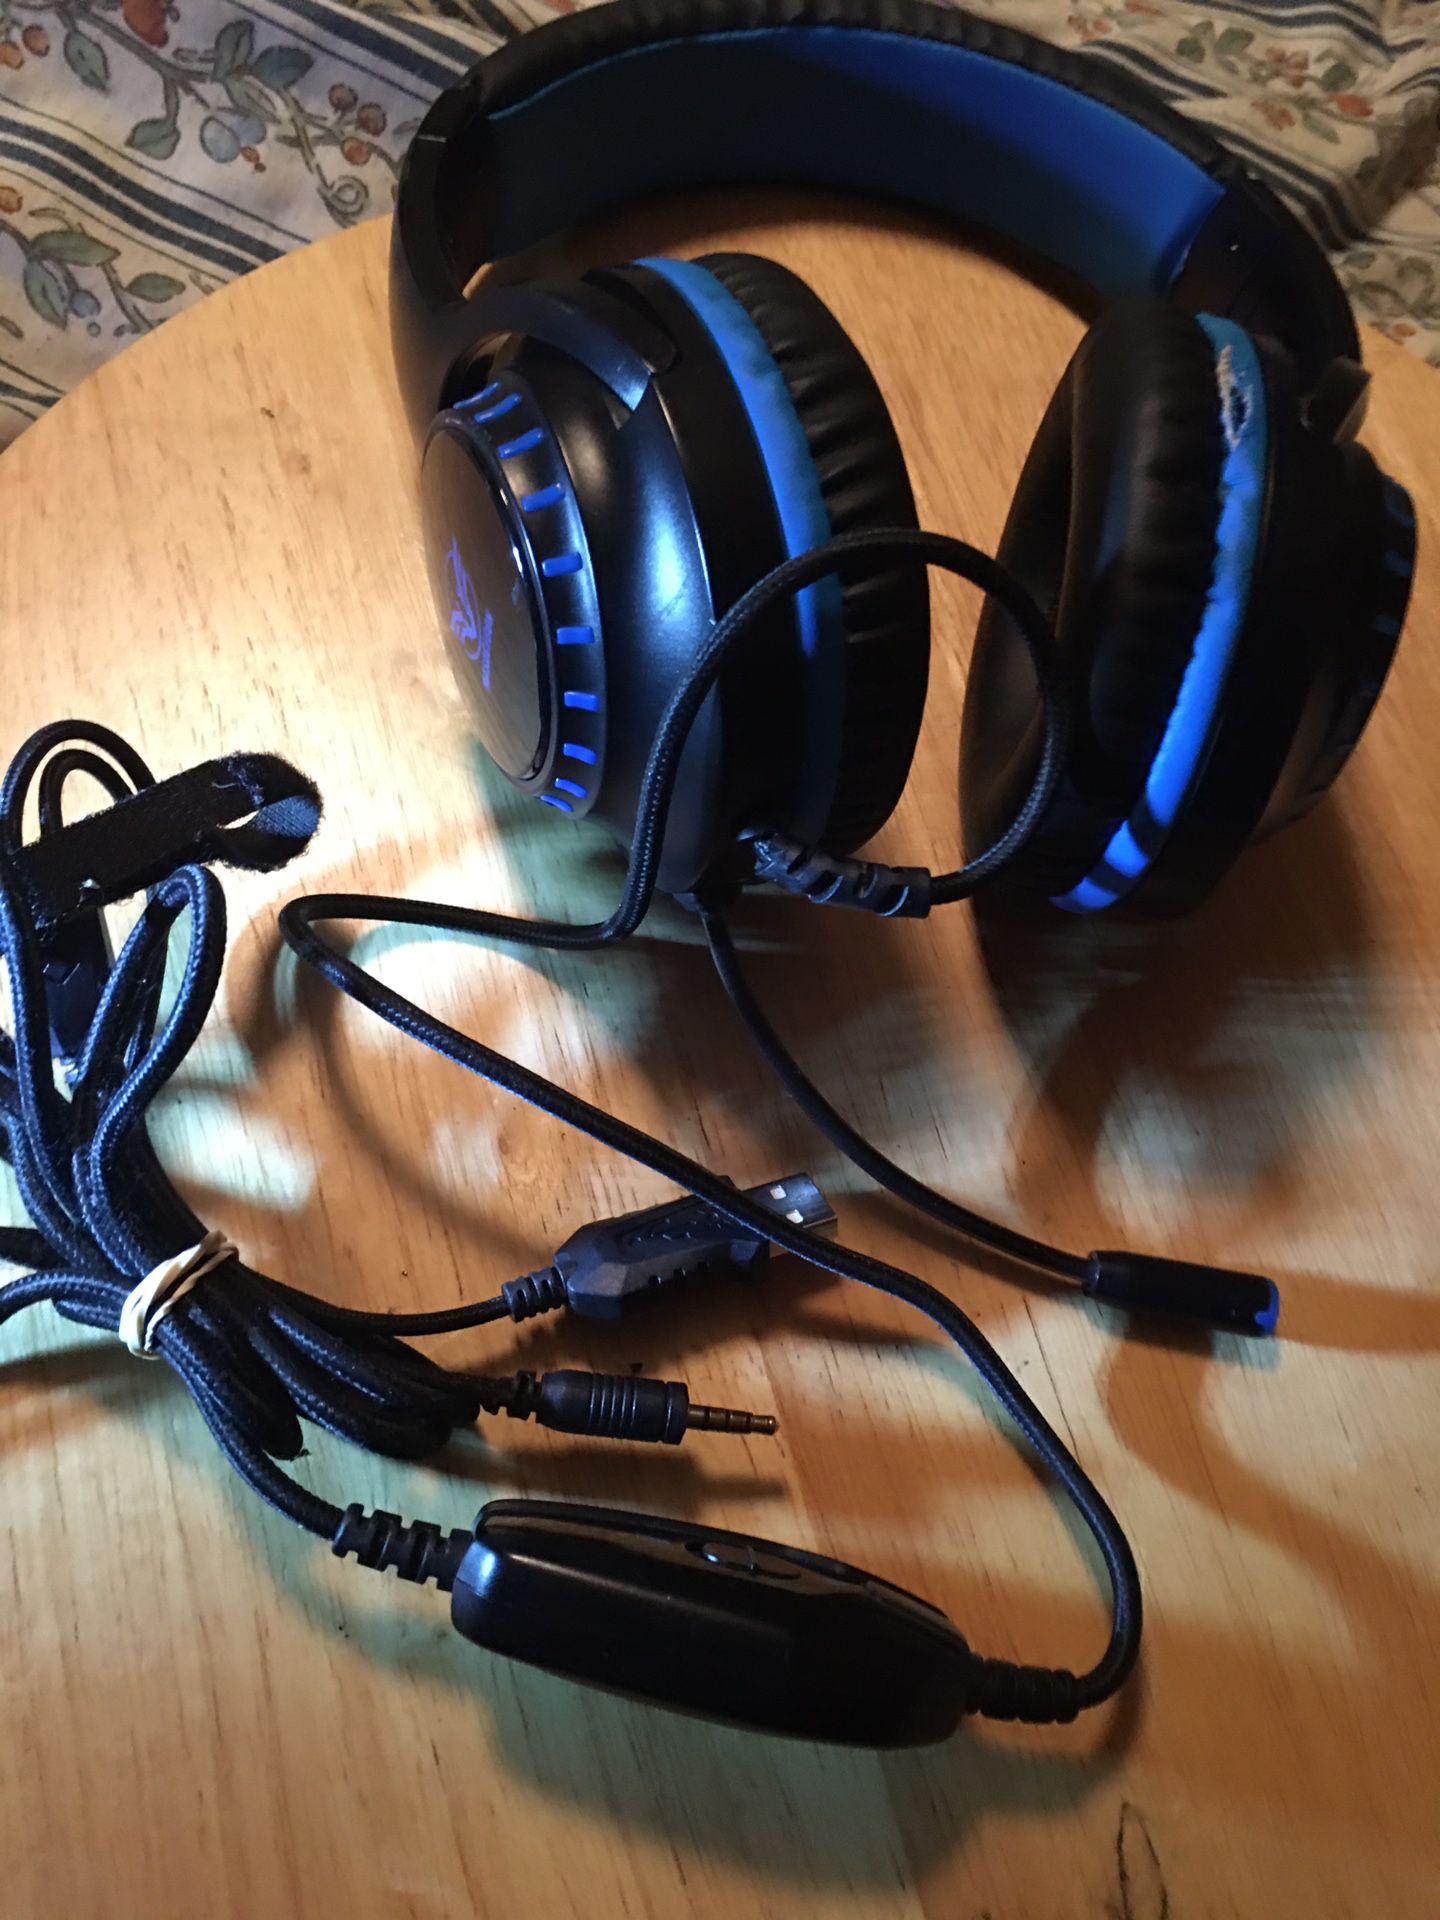 Black/blue Gaming Headphones